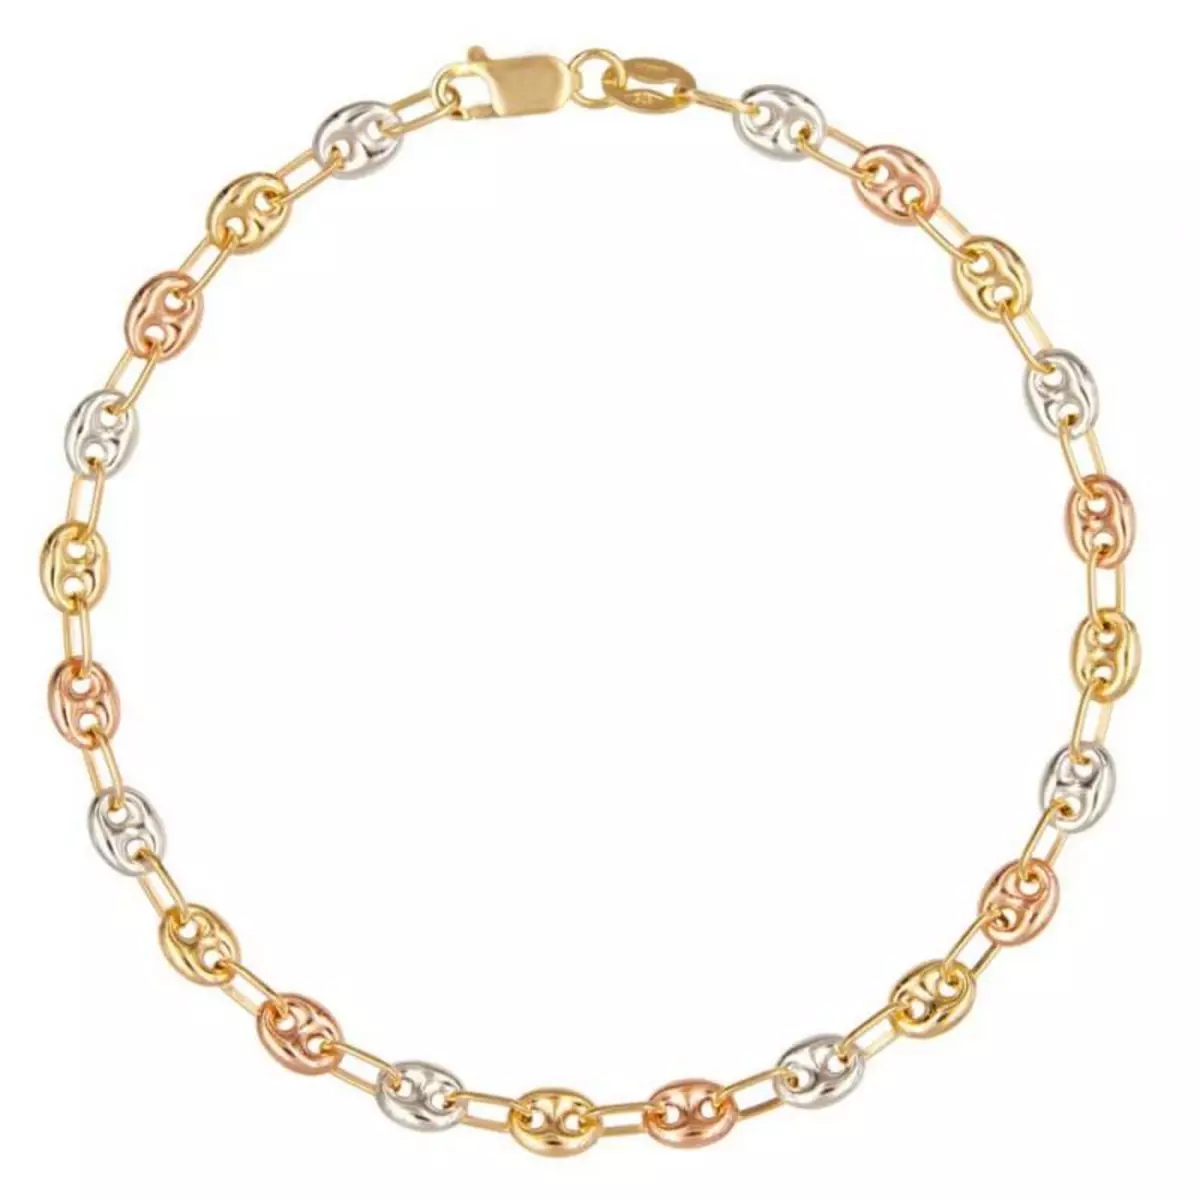 L'ATELIER D'AZUR Bracelet 3 Ors - Or Tricolore - Grain de Café Jaune, Blanc et Rose - Femme